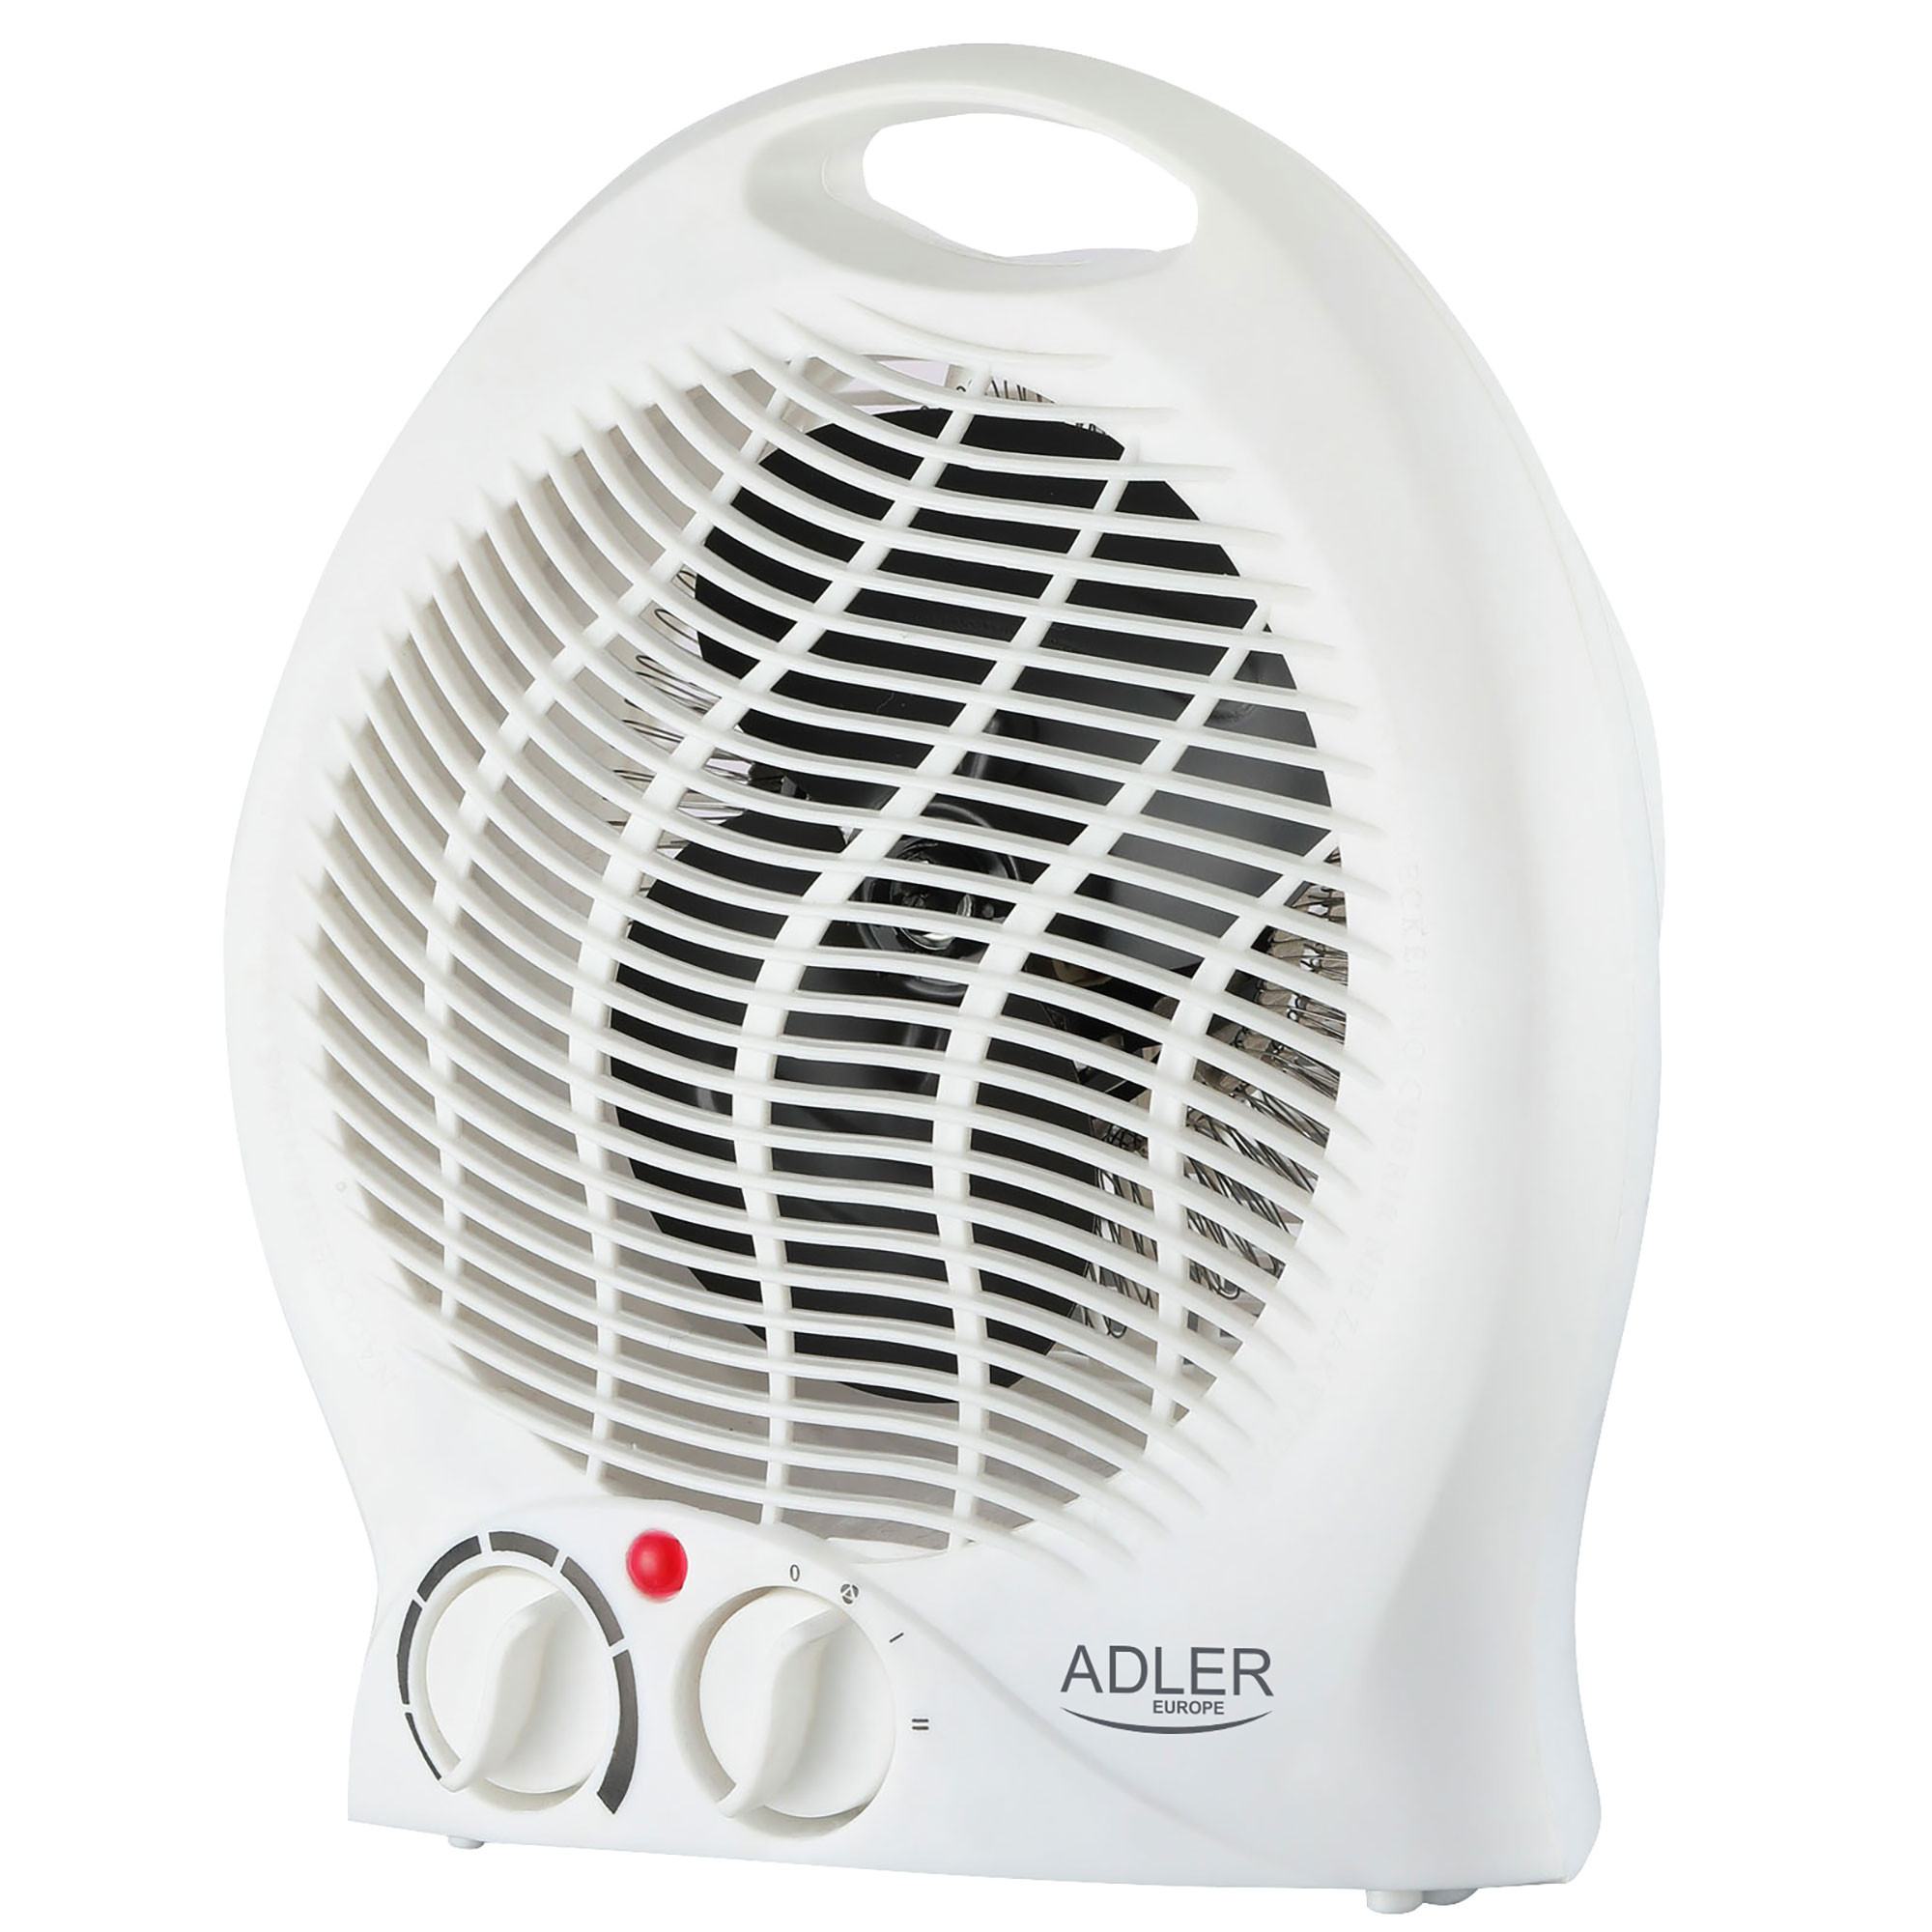 ADLER AD 7728 Calefactor Ventilador Eléctrico Portátil, Aire Caliente /  Frío, 2 Niveles de Potencia, Termostato, Sistema